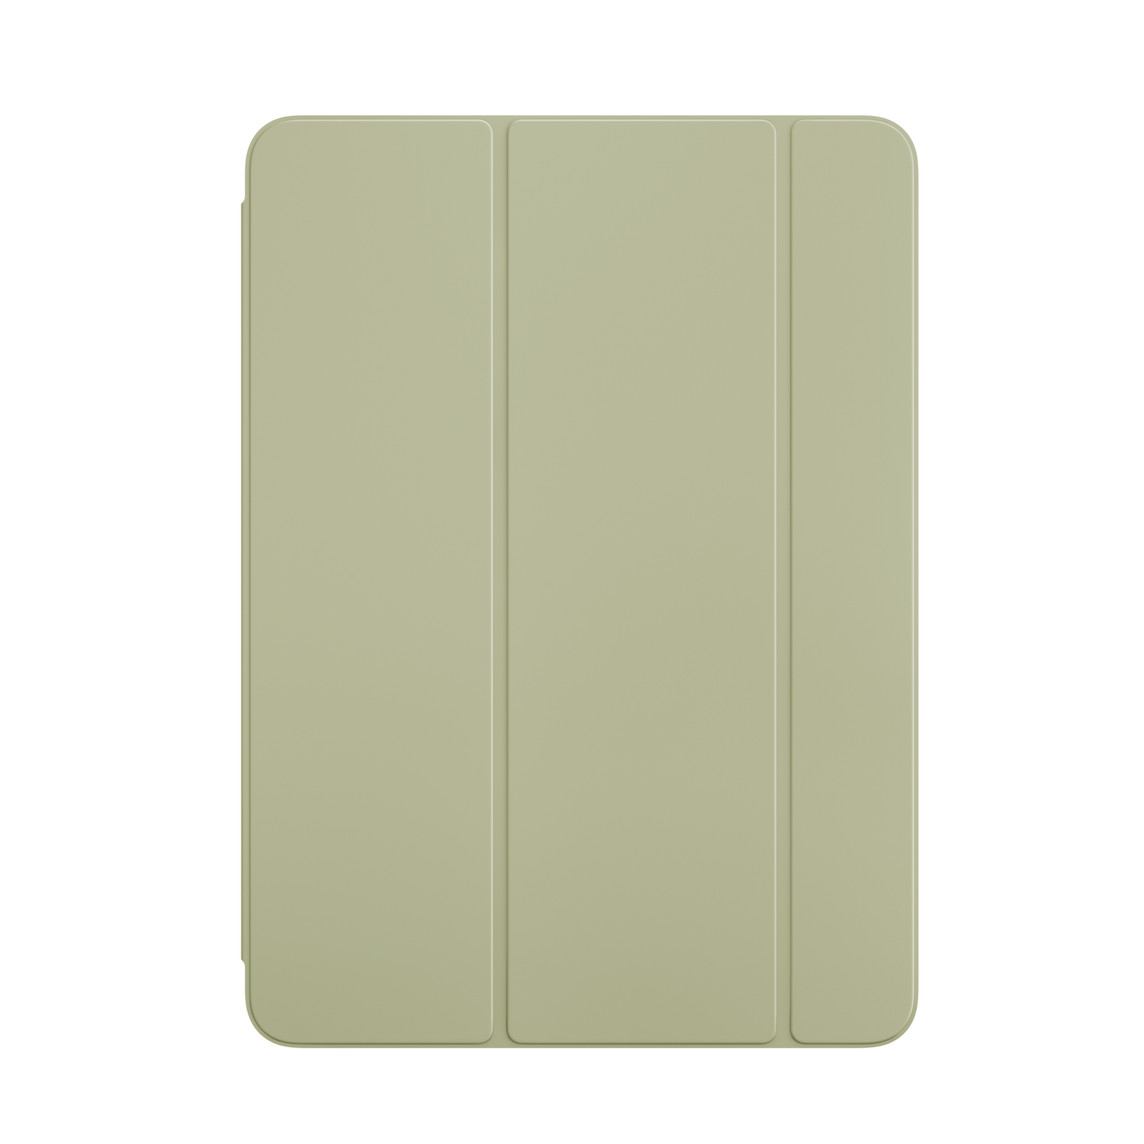 Face externe du Smart Folio vert pour iPad Air.